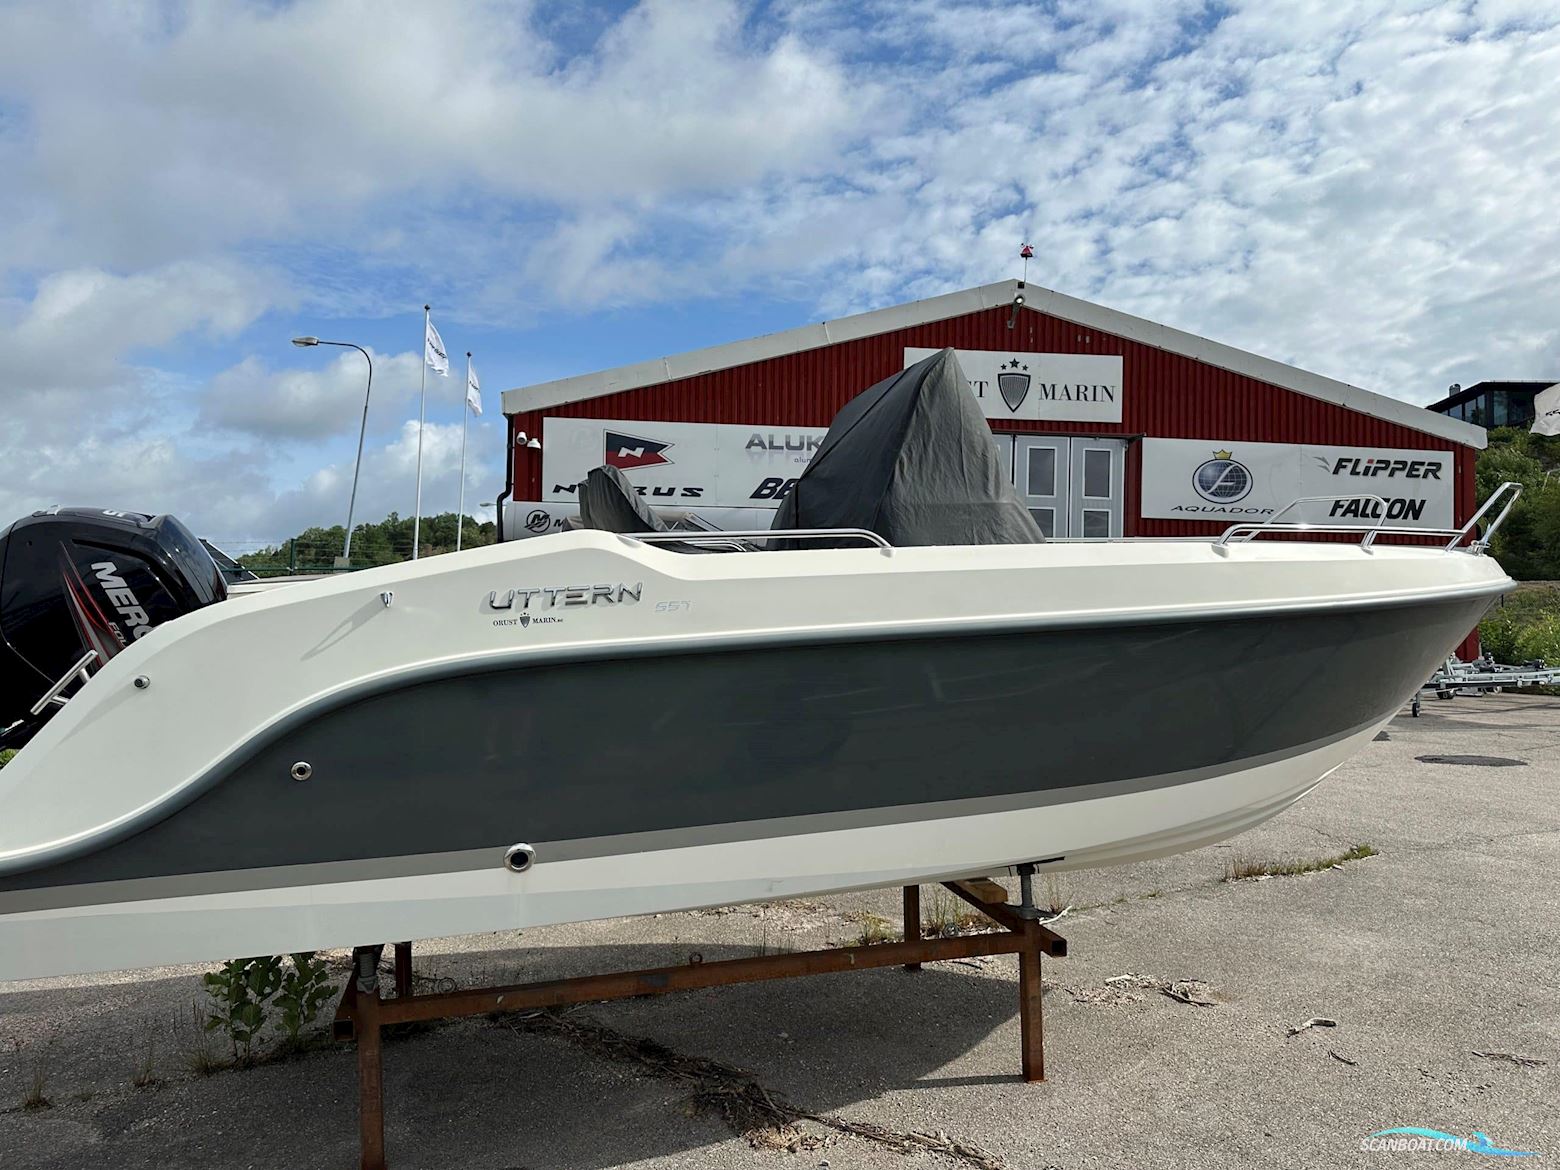 Uttern S57 Motor boat 2015, with Mercury 115 hk engine, Sweden